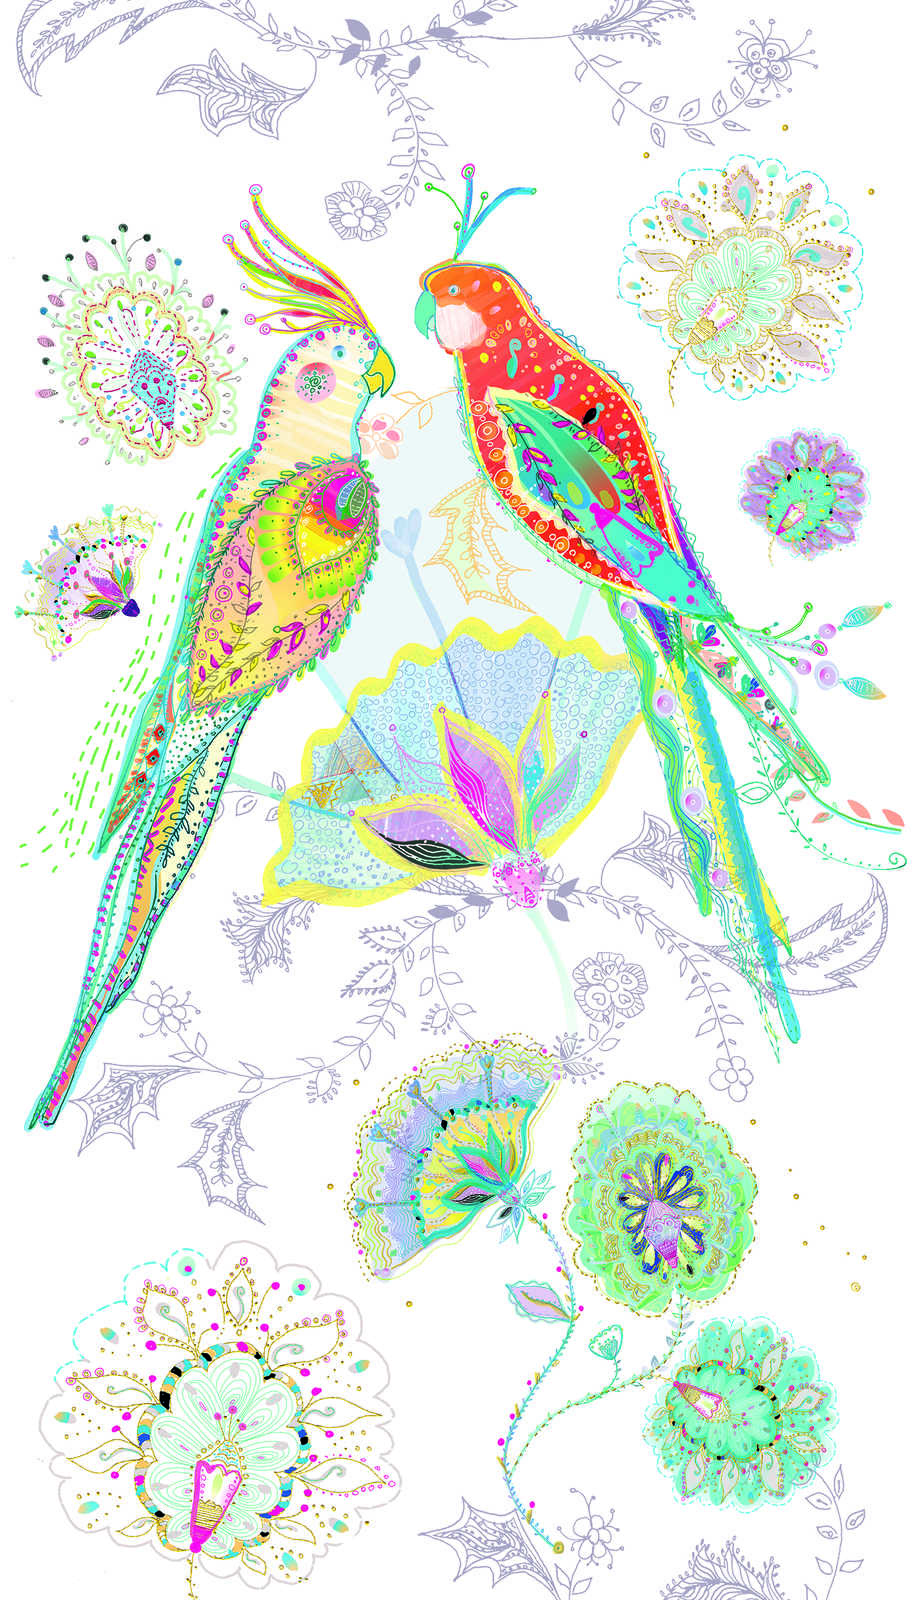             Papel pintado no tejido con motivo de pájaros y flores - beige, colorido, verde, azul, naranja
        